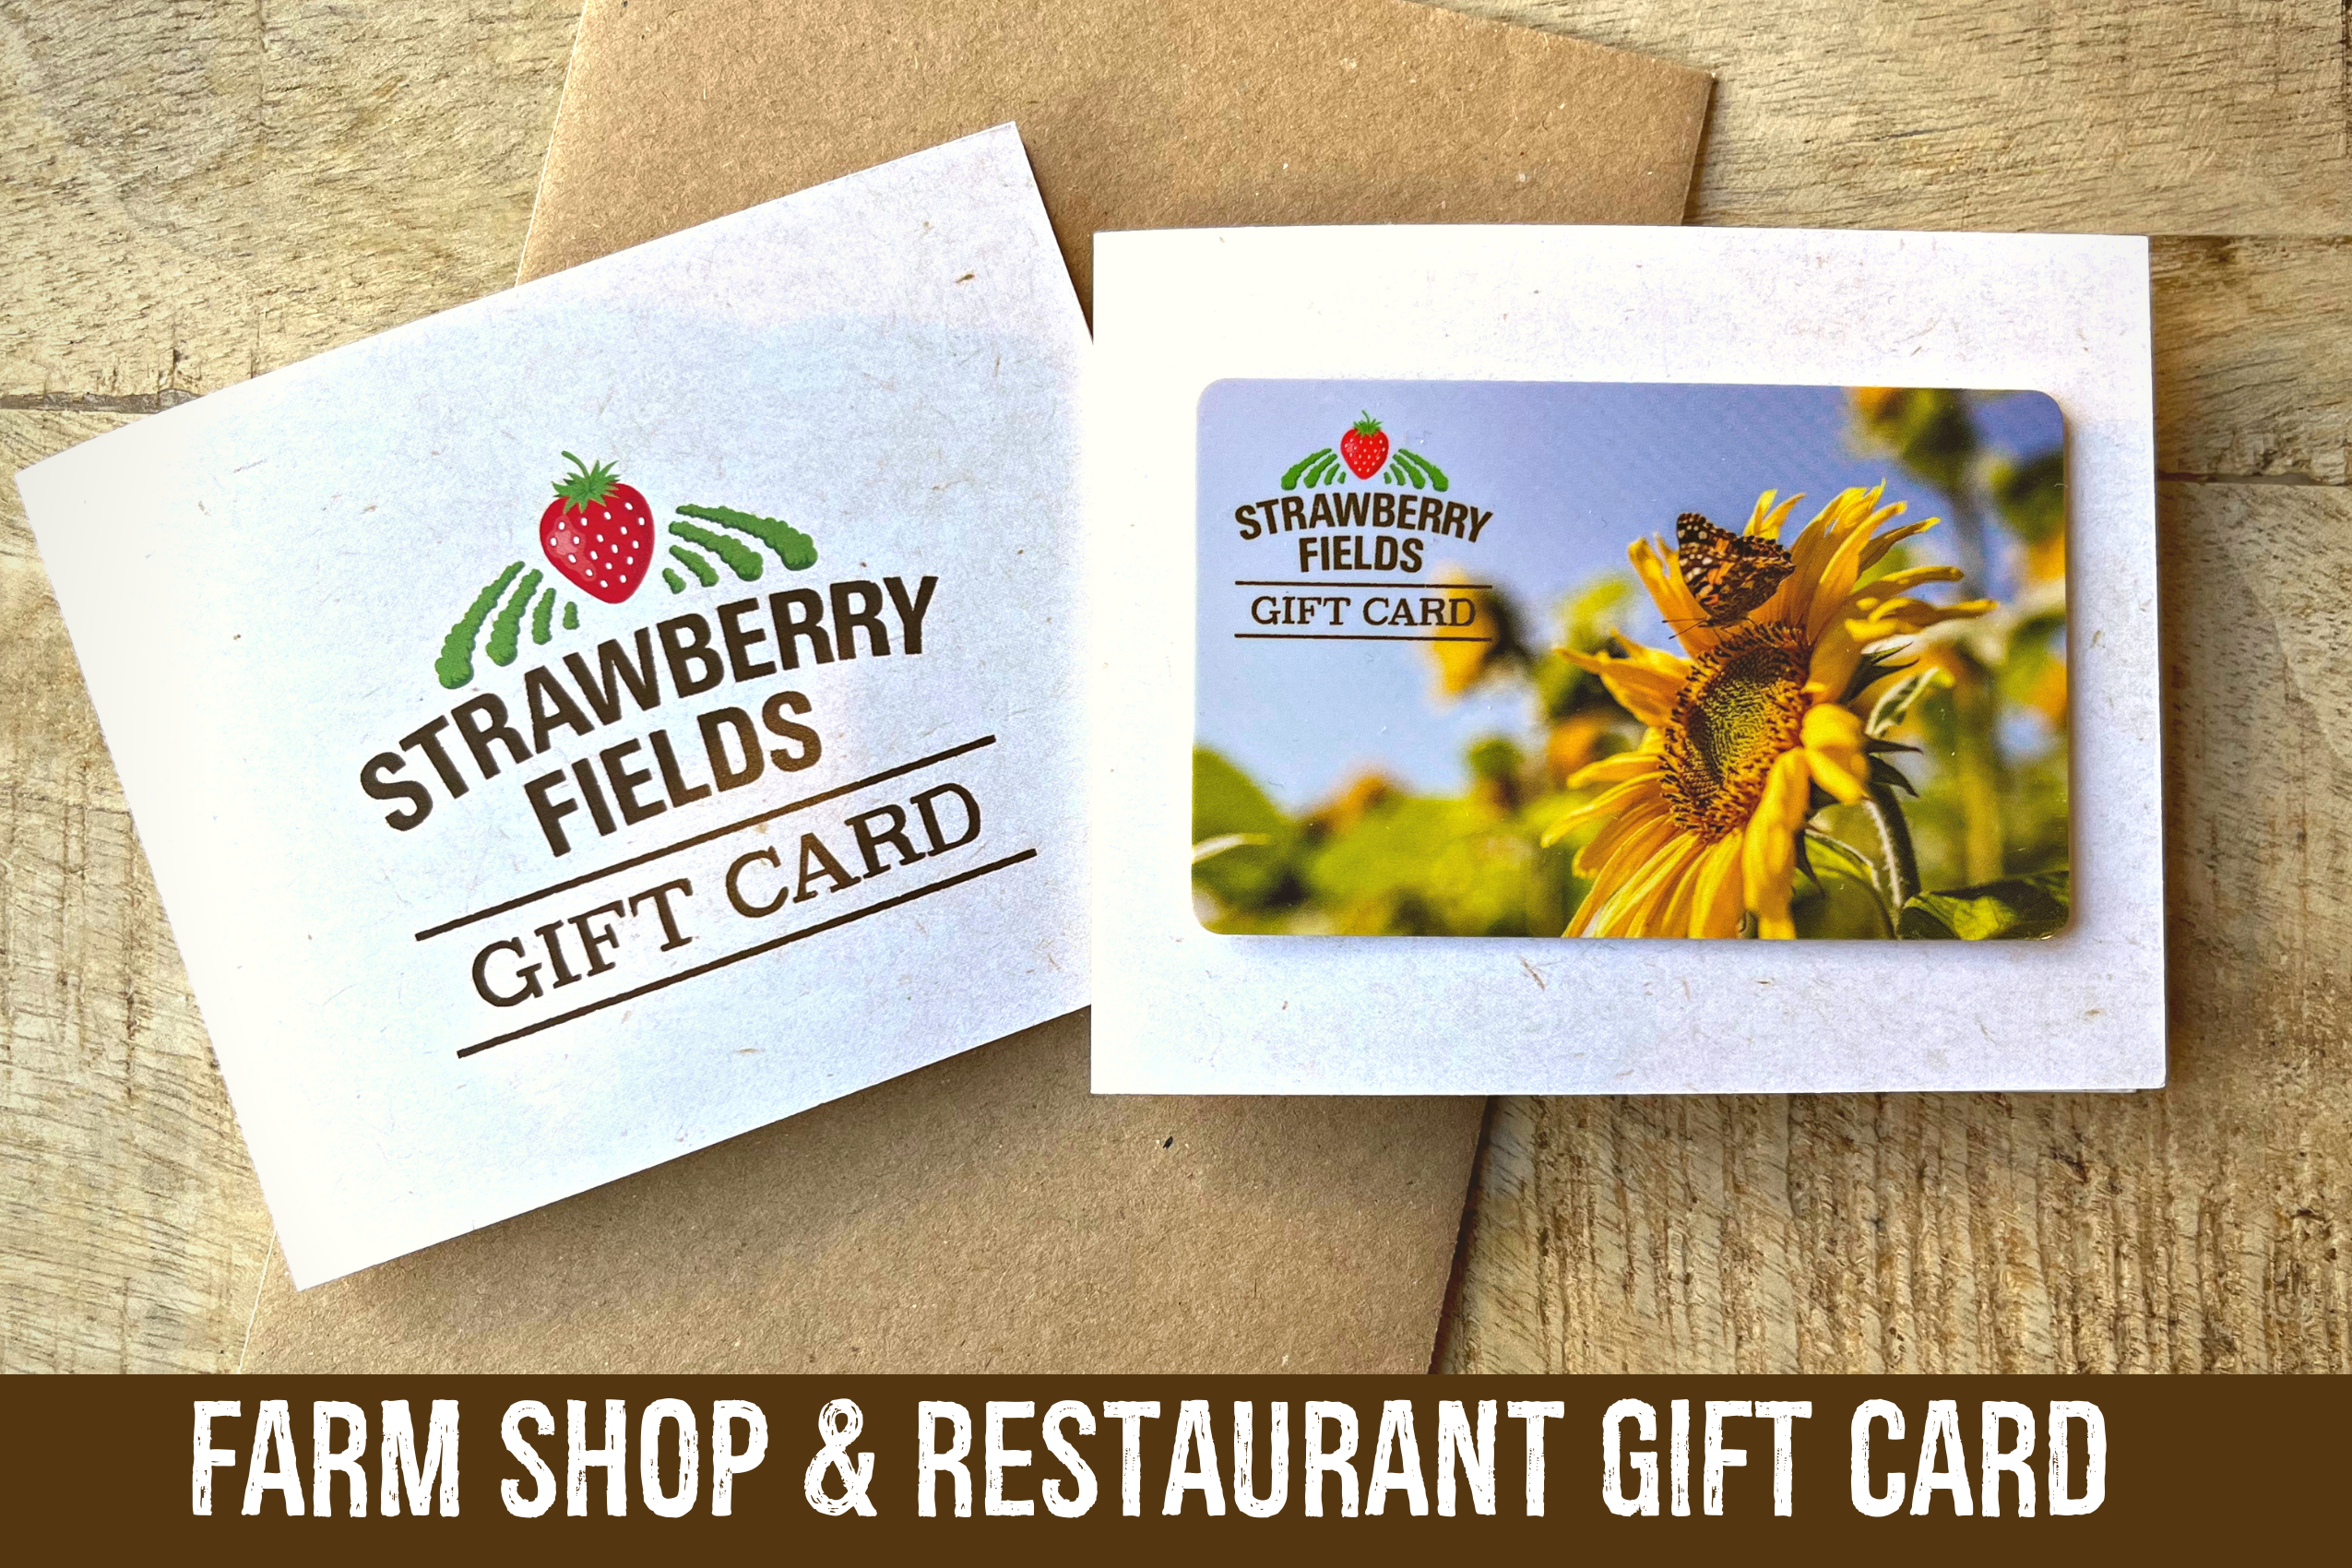 Strawberry Fields Gift Card – Strawberry Fields Farm Shop